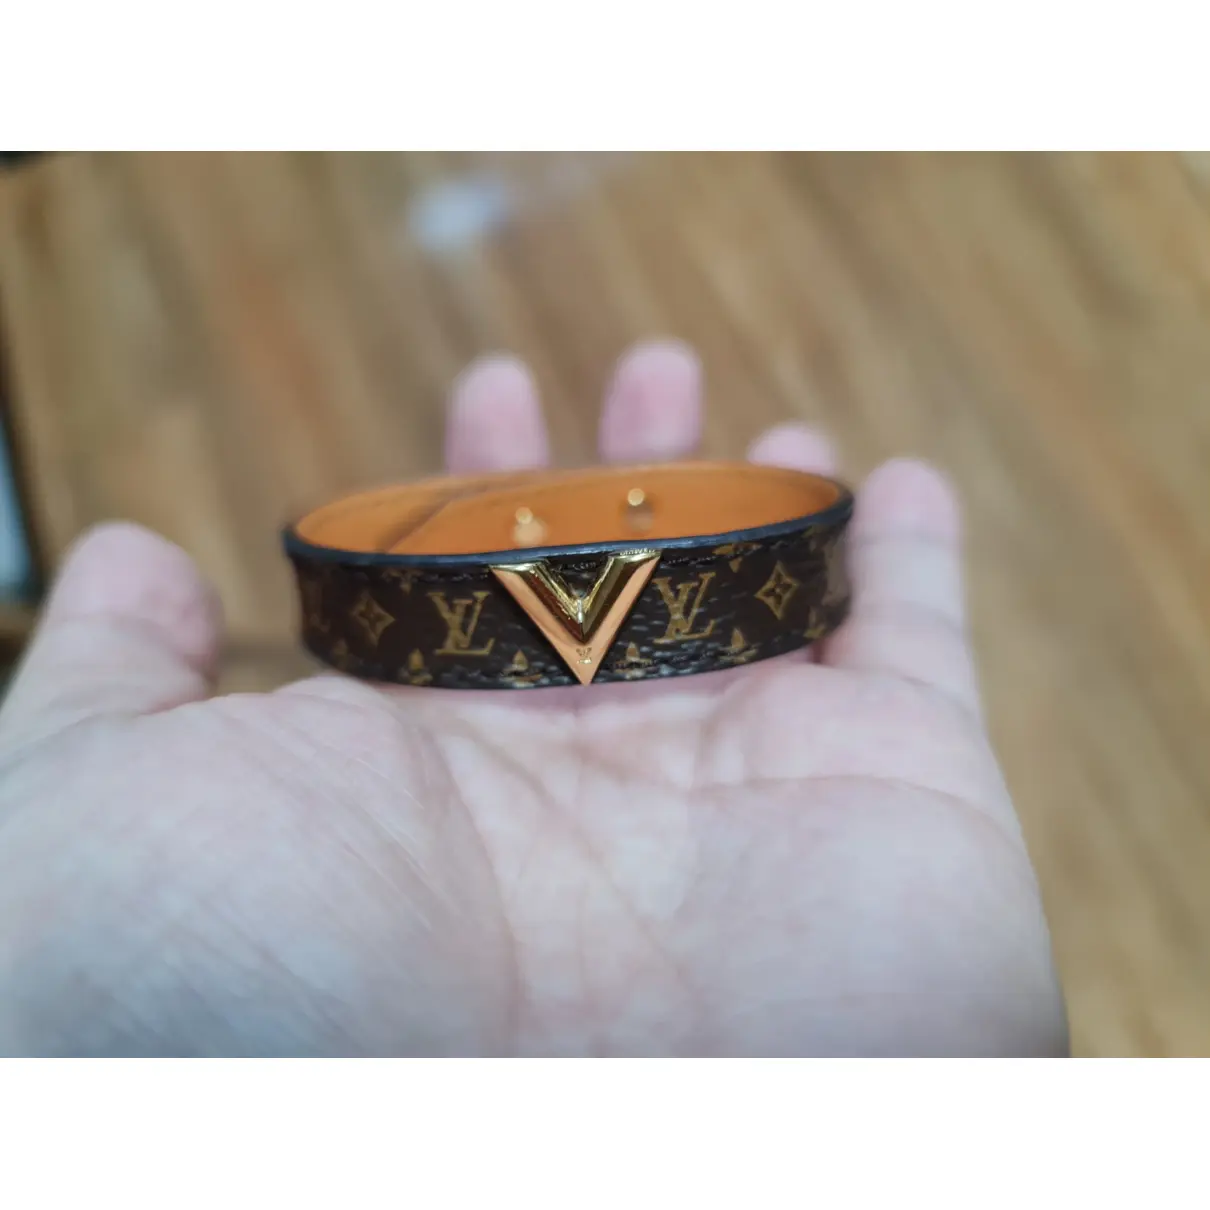 Nanogram leather bracelet Louis Vuitton